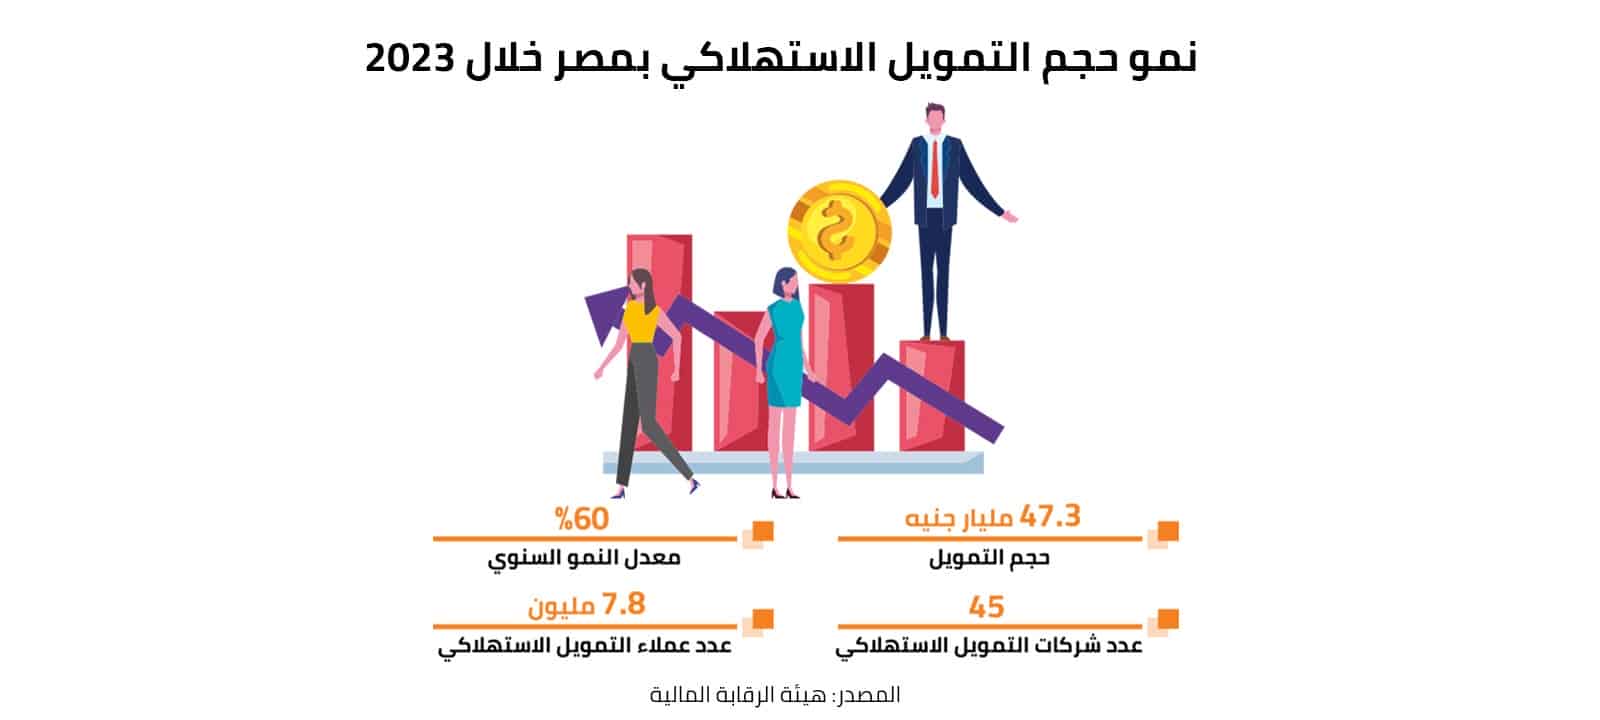 نمو حجم التمويل الاستهلاكي بمصر خلال 2023